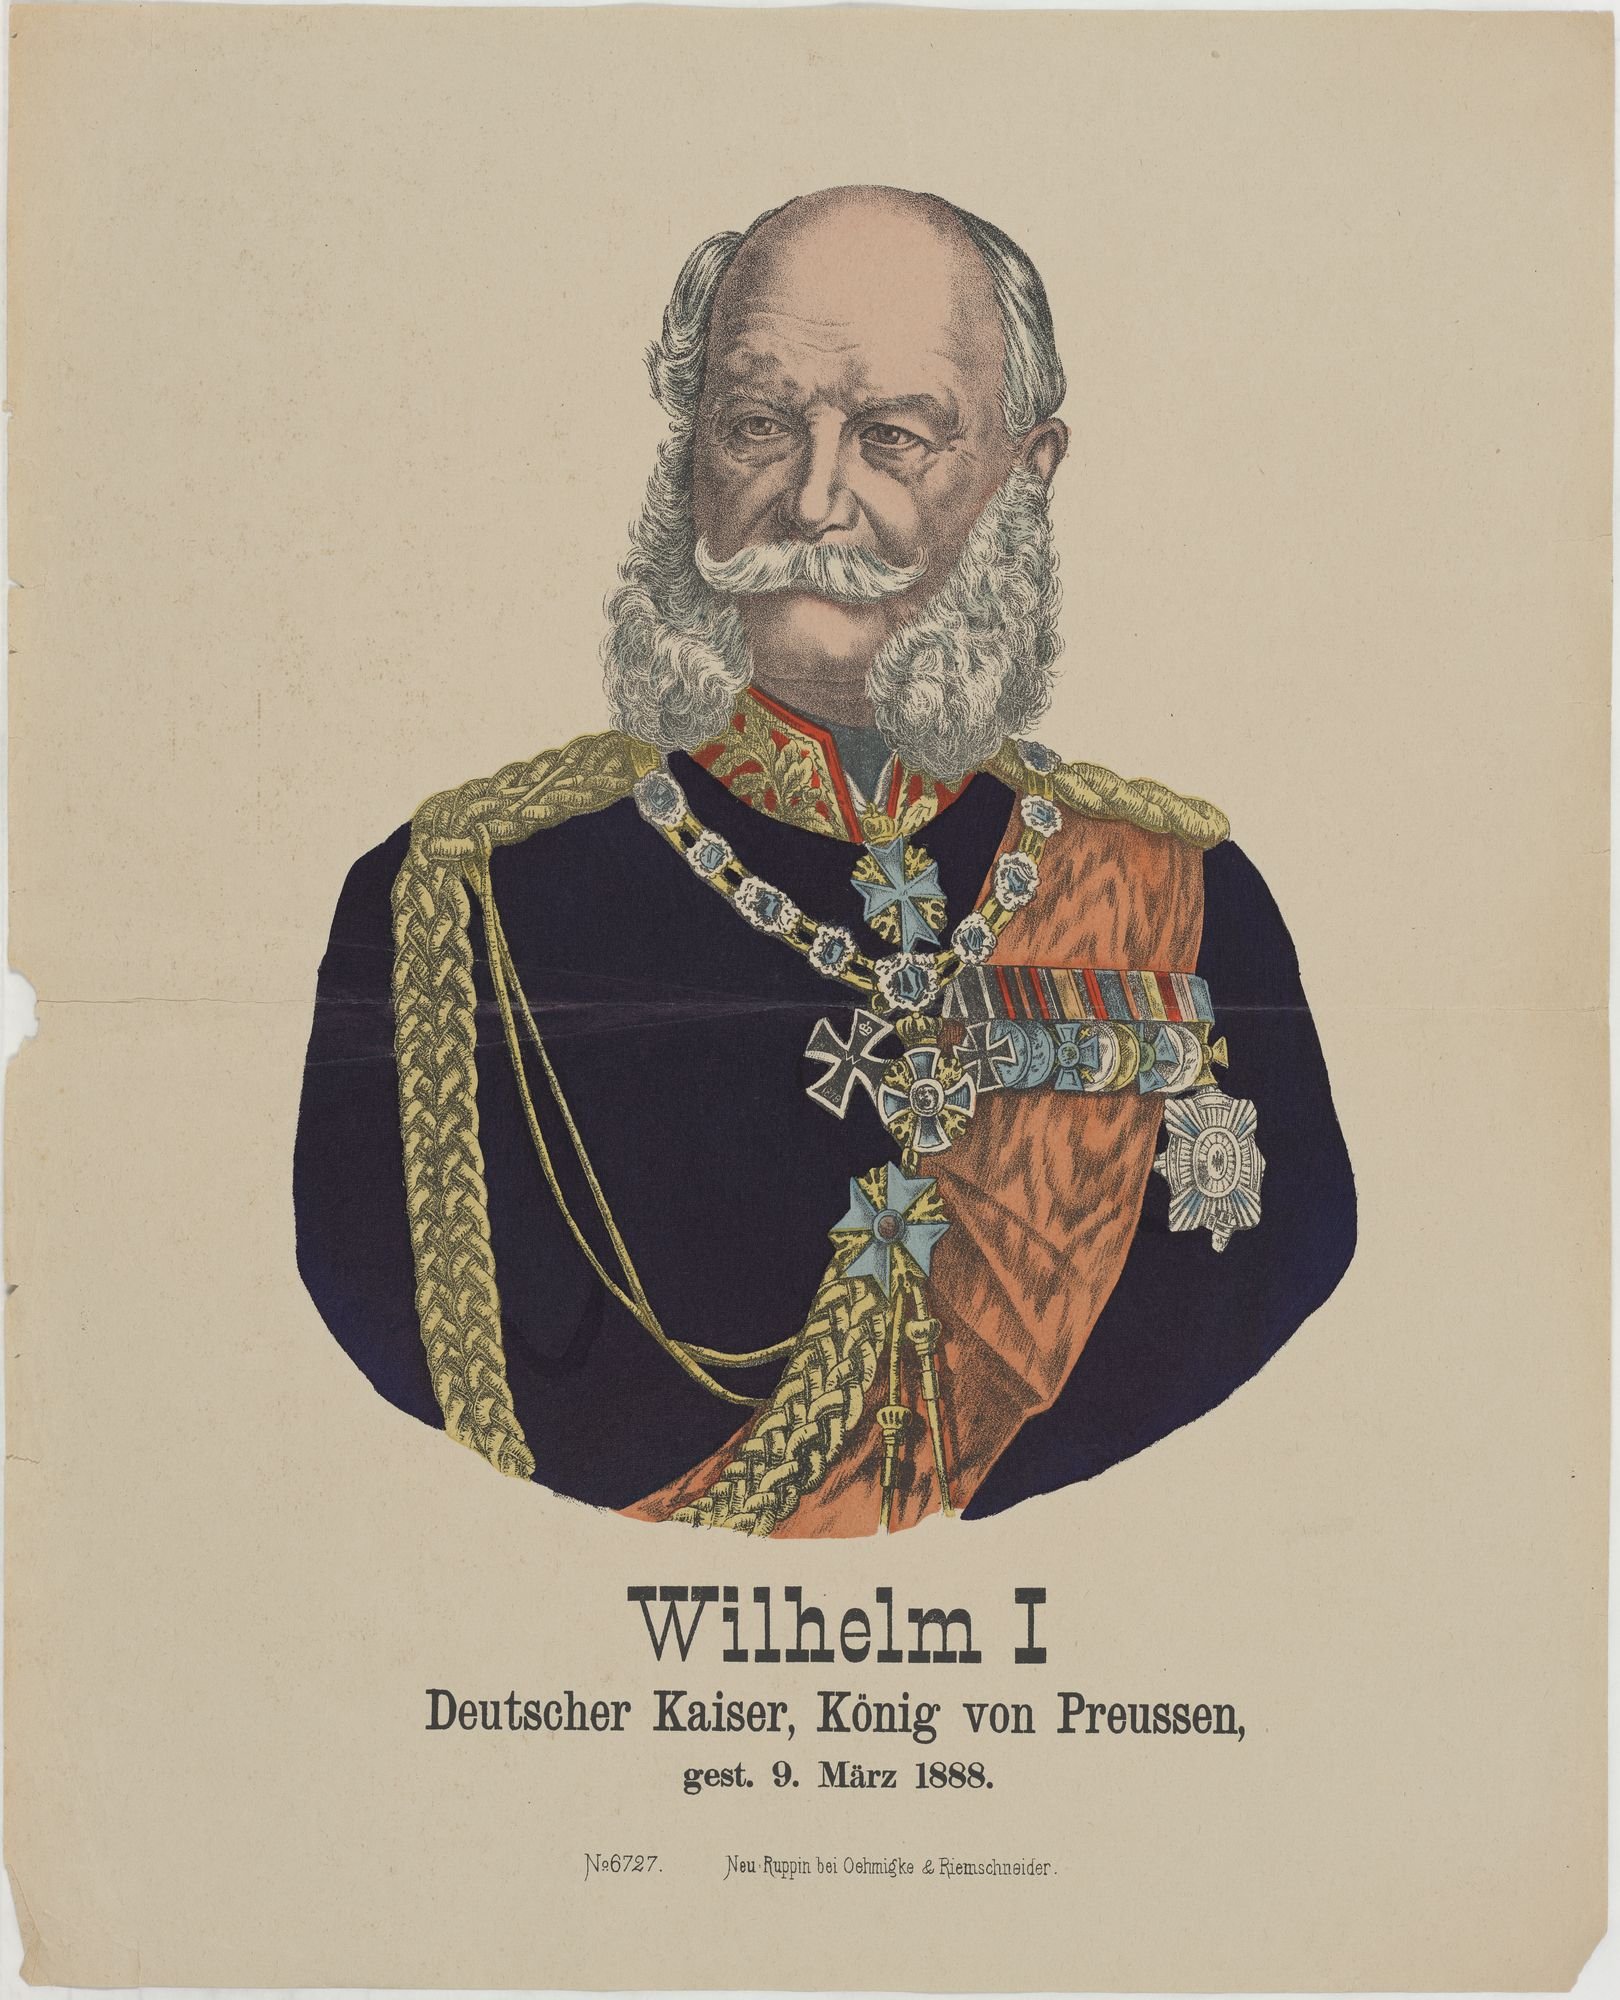 Wilhelm I,/ Deutscher Kaiser, König von Preussen,/ gest. 9. März 1888. (Kulturstiftung Sachsen-Anhalt Public Domain Mark)